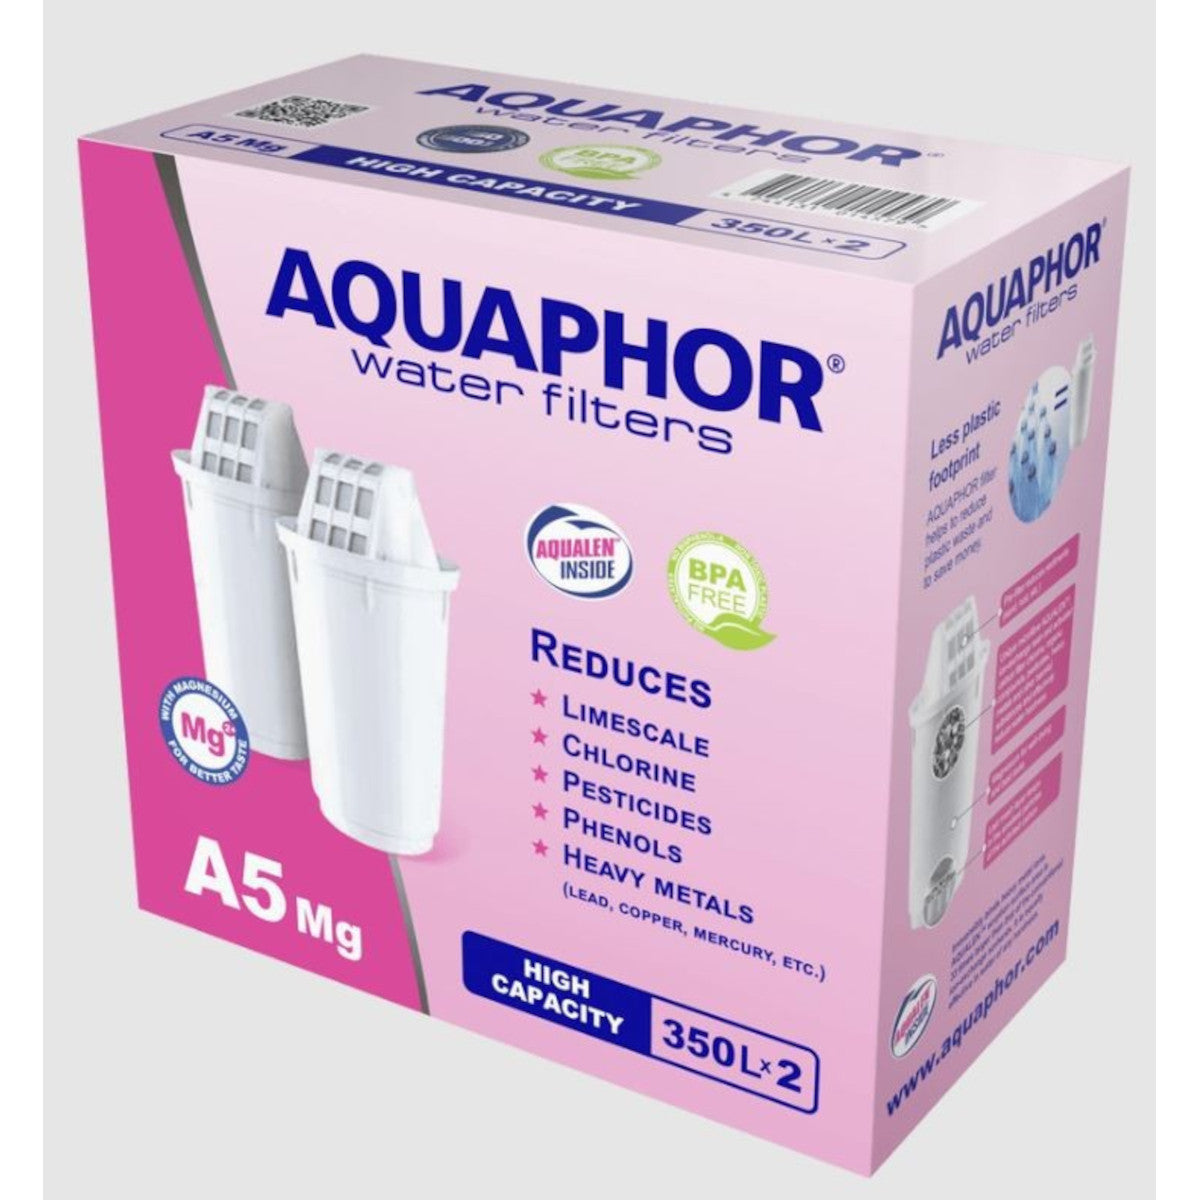 Aquaphor A5 Mg maiņas filtrs ūdens filtra krūzēm, 350L x 2 gab.